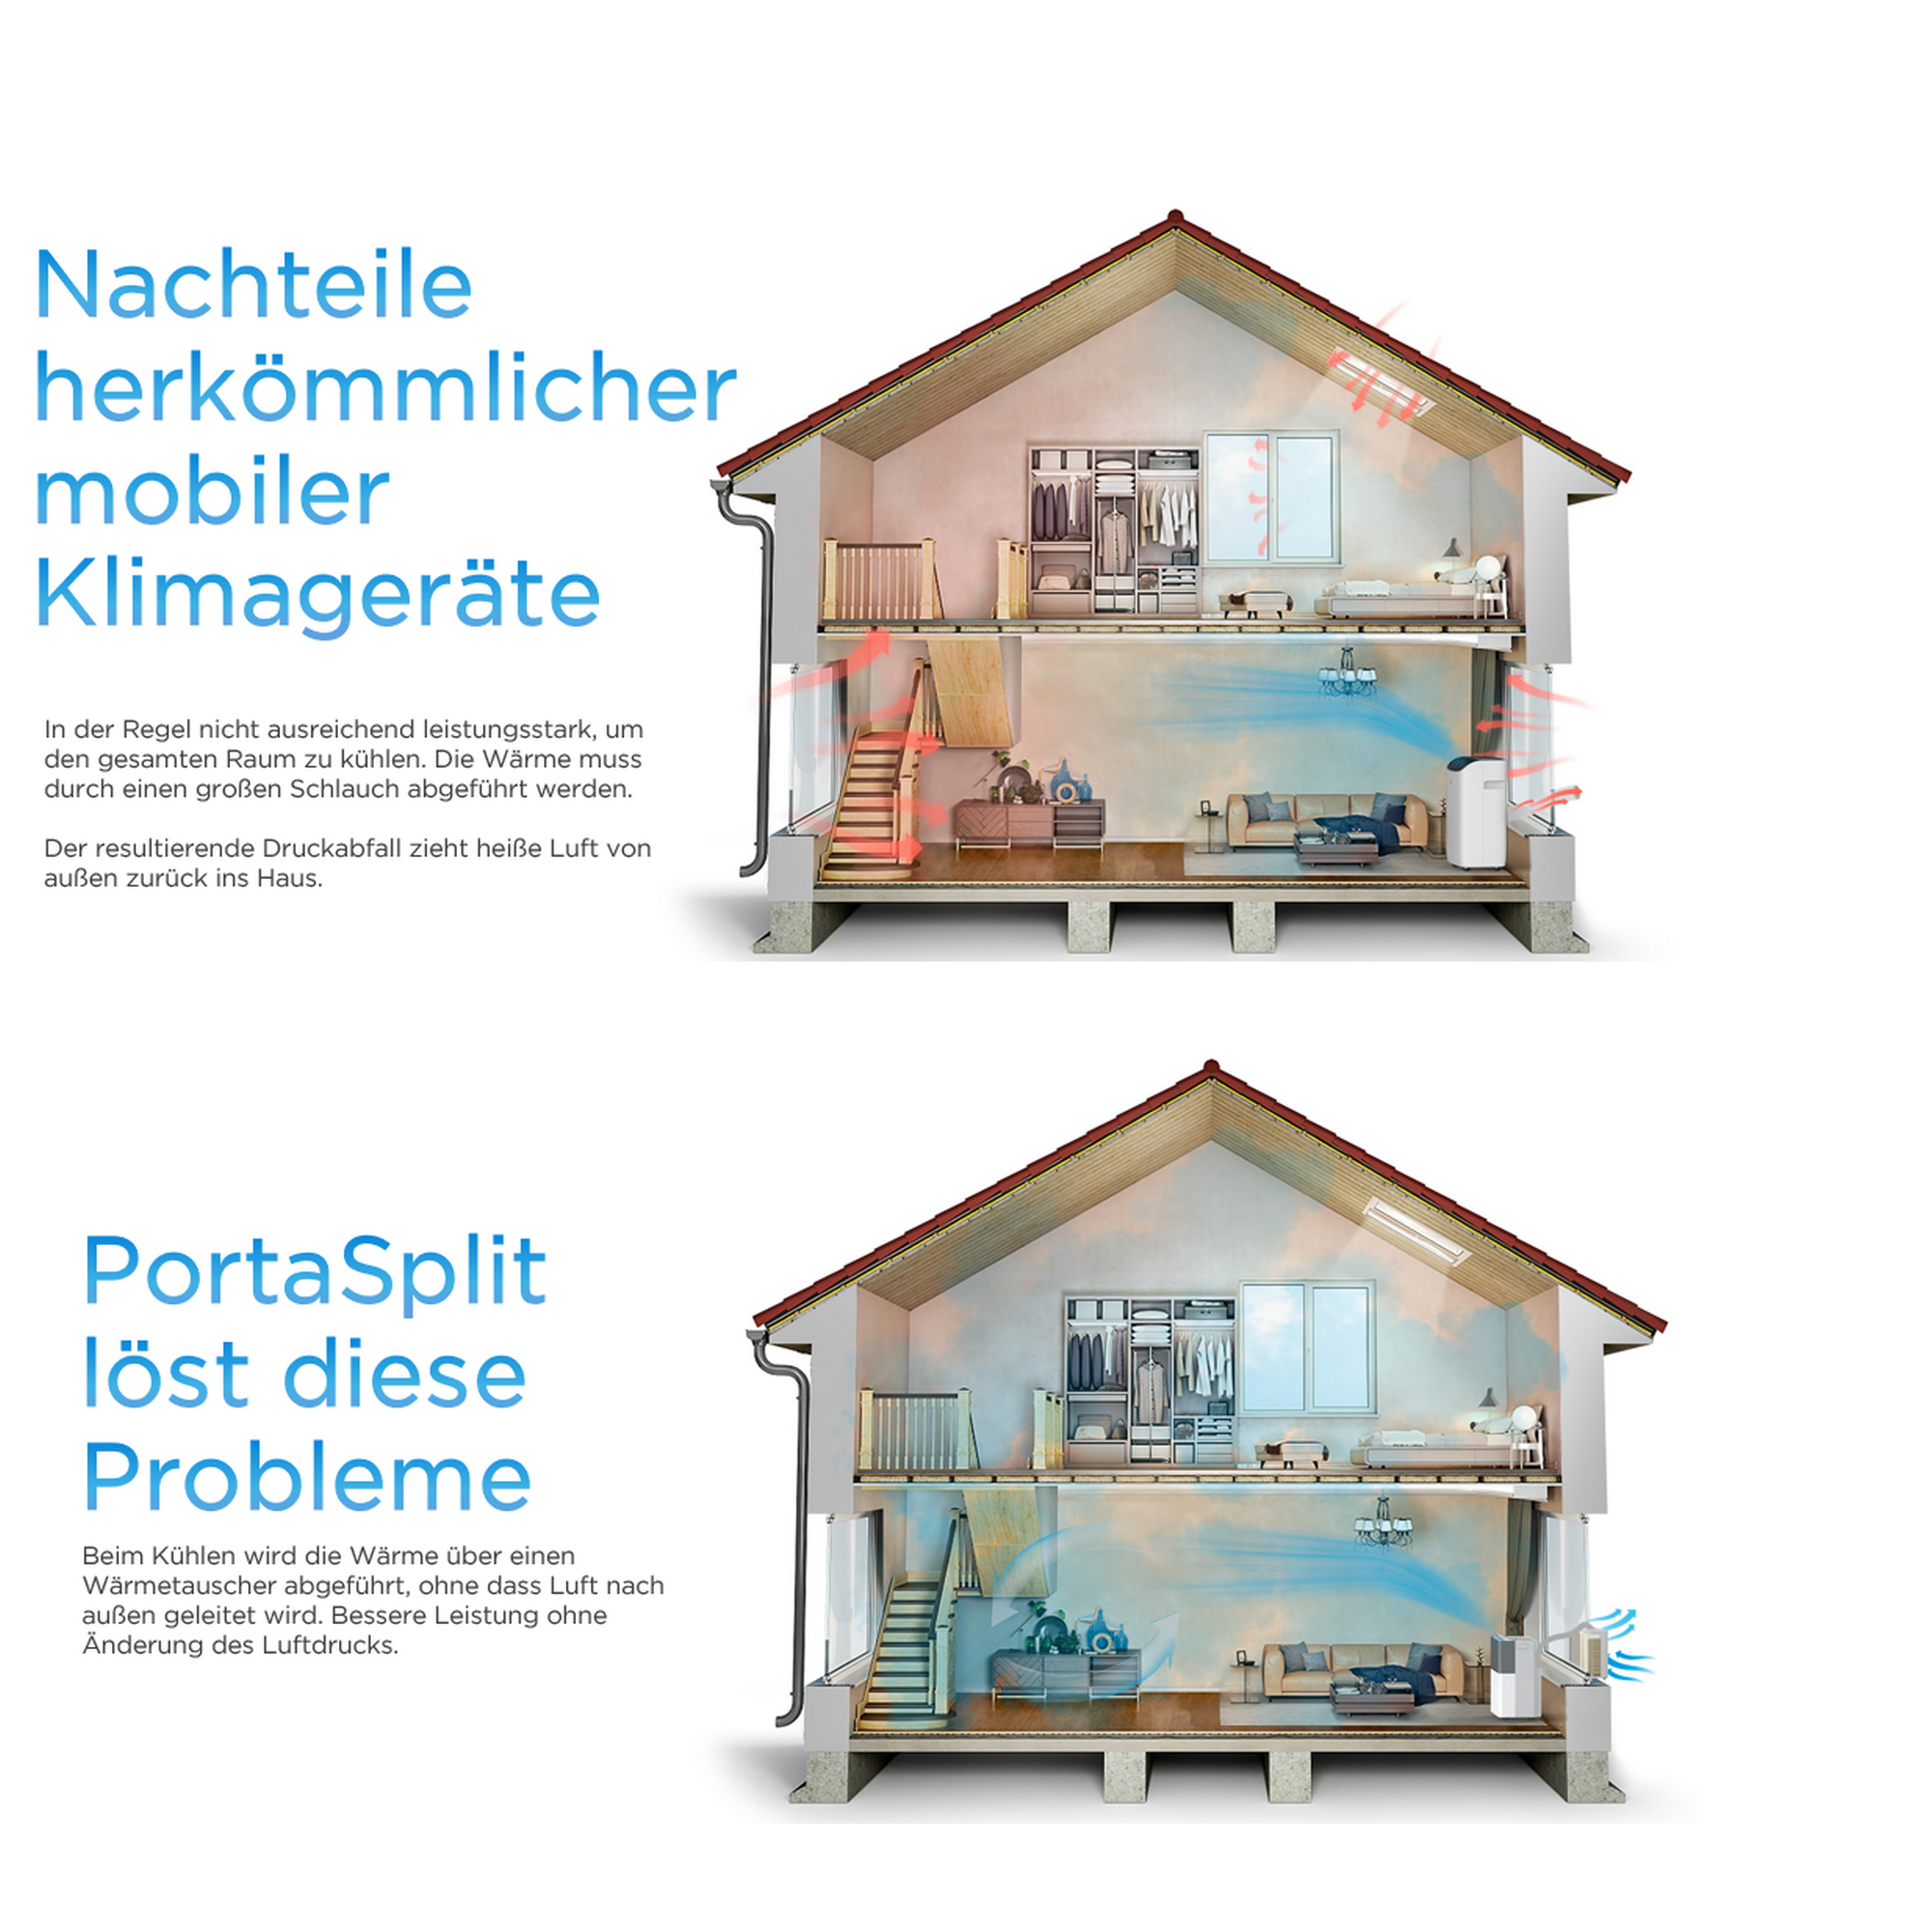 Mobiles Klimagerät 'PortaSplit' 12000 BTU/h + product picture